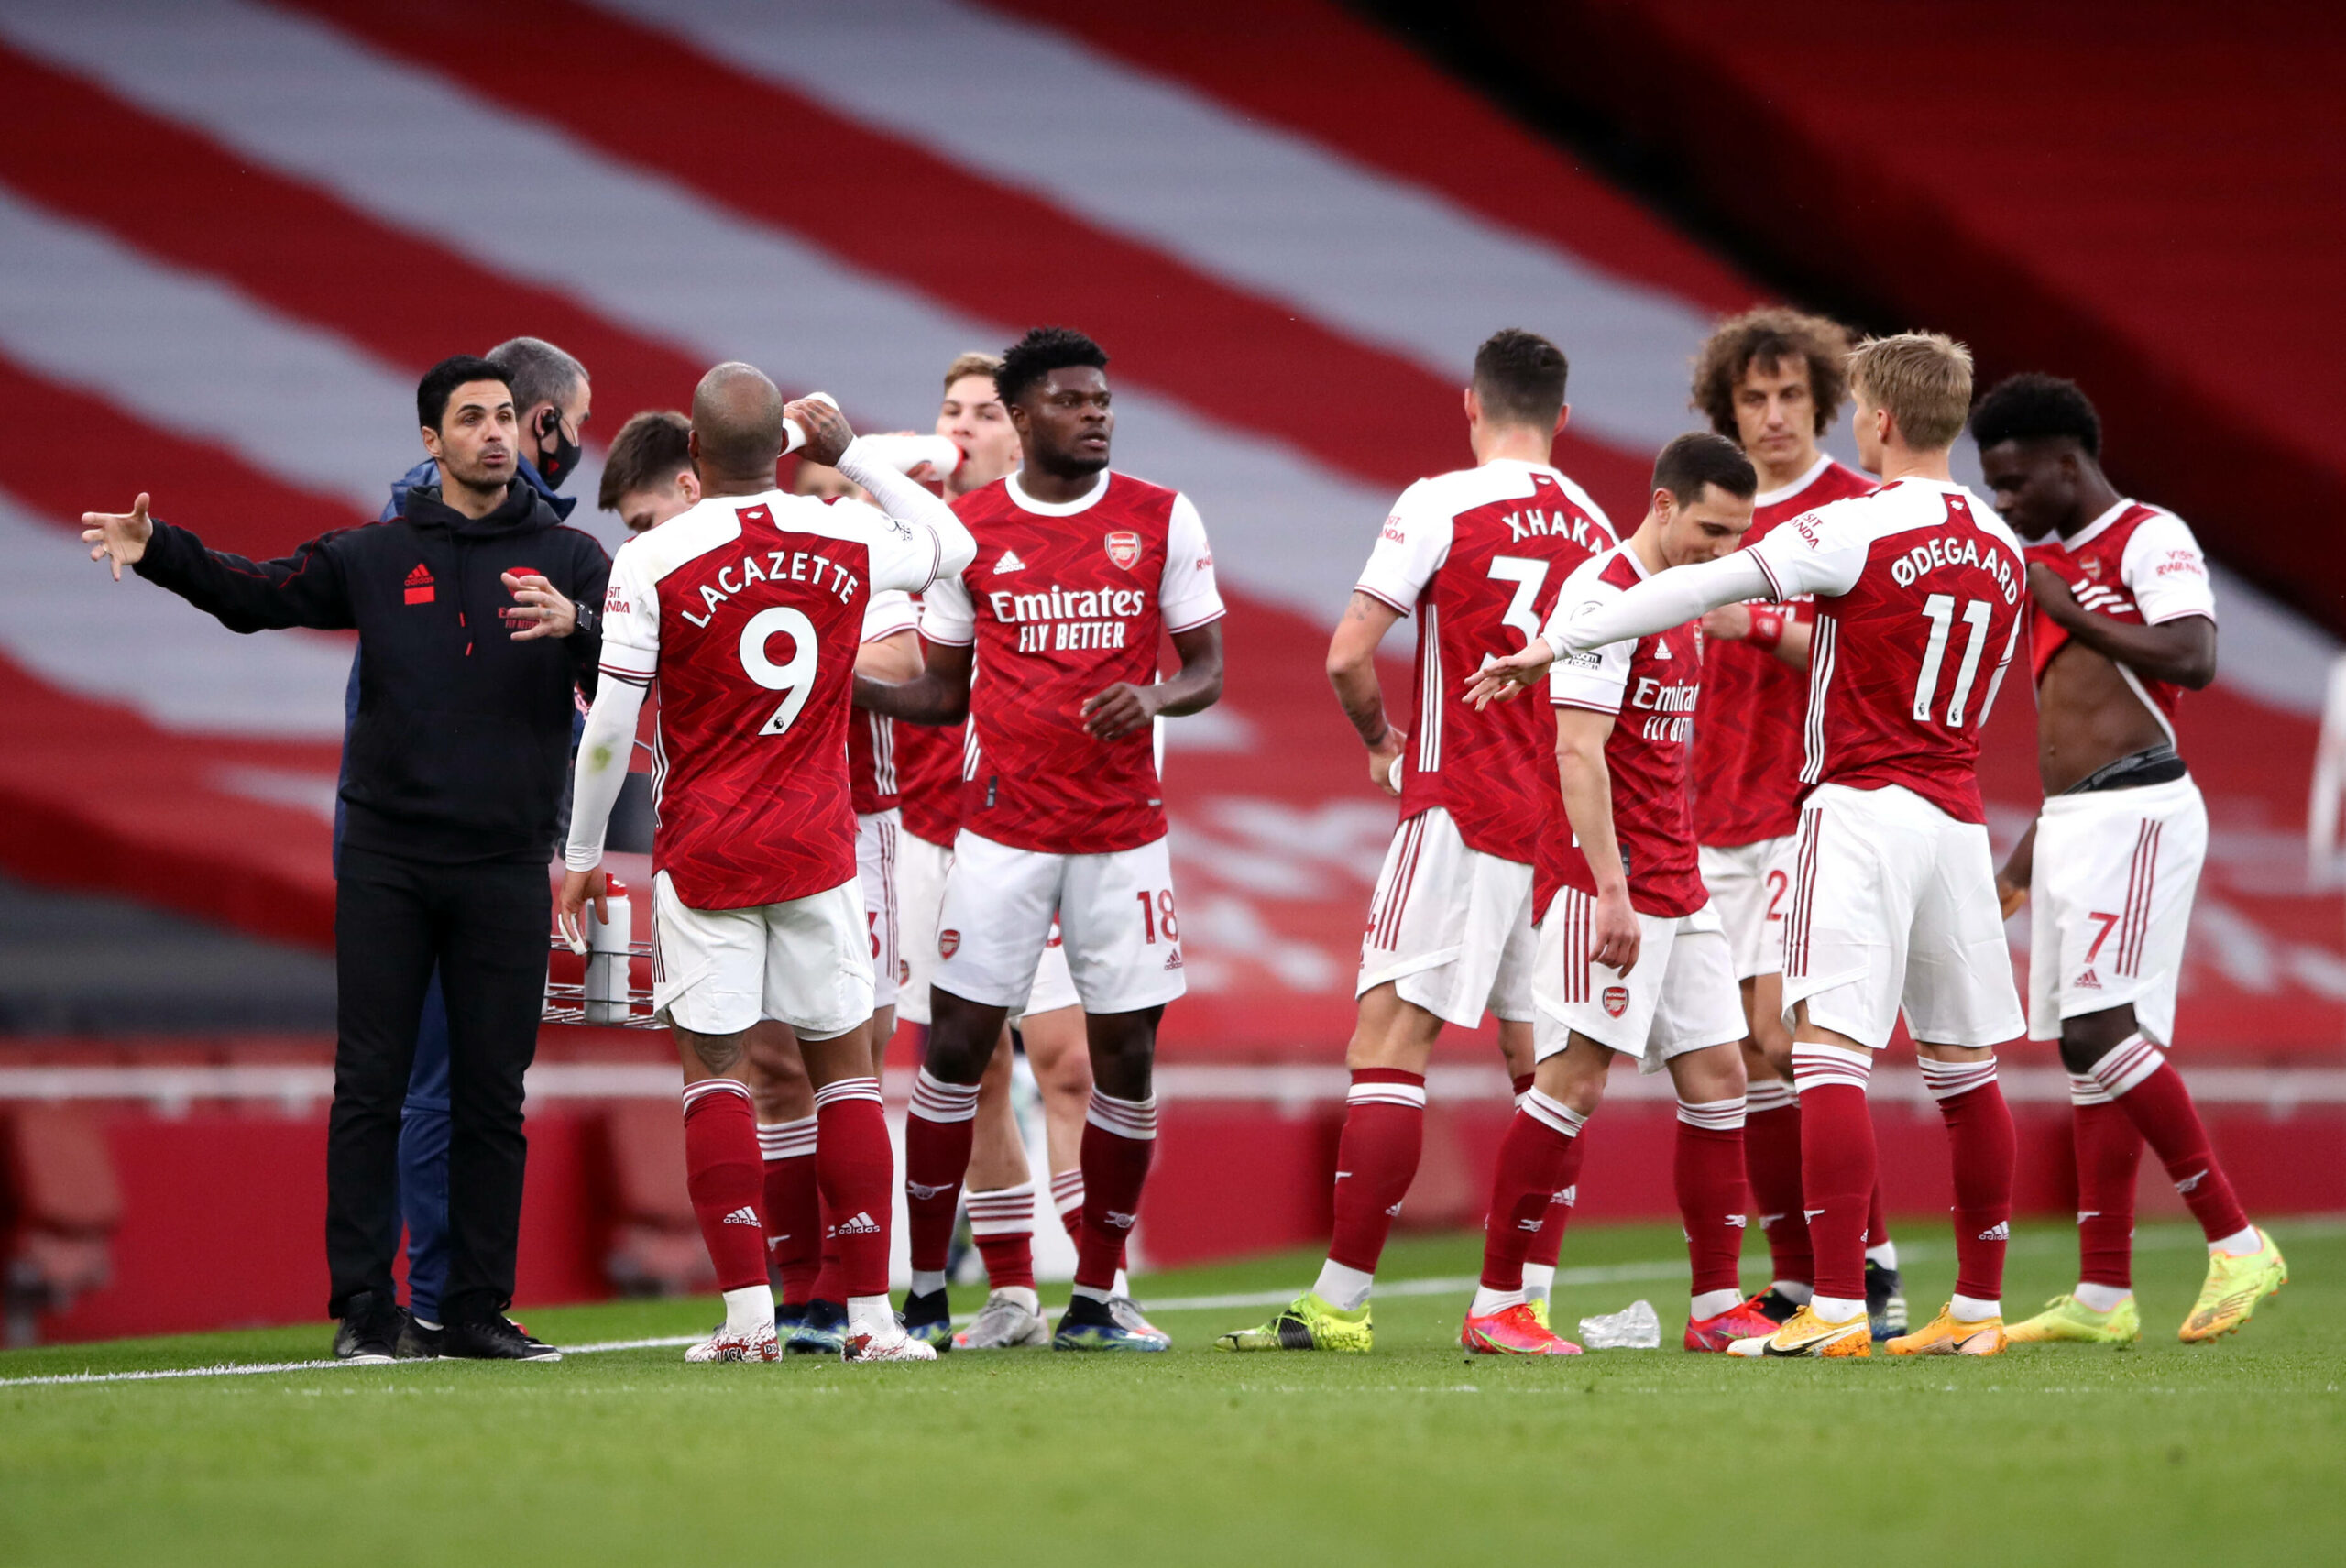 EL | Arsenal möchte gegen Slavia Prag die letzte Chance auf Europa wahren